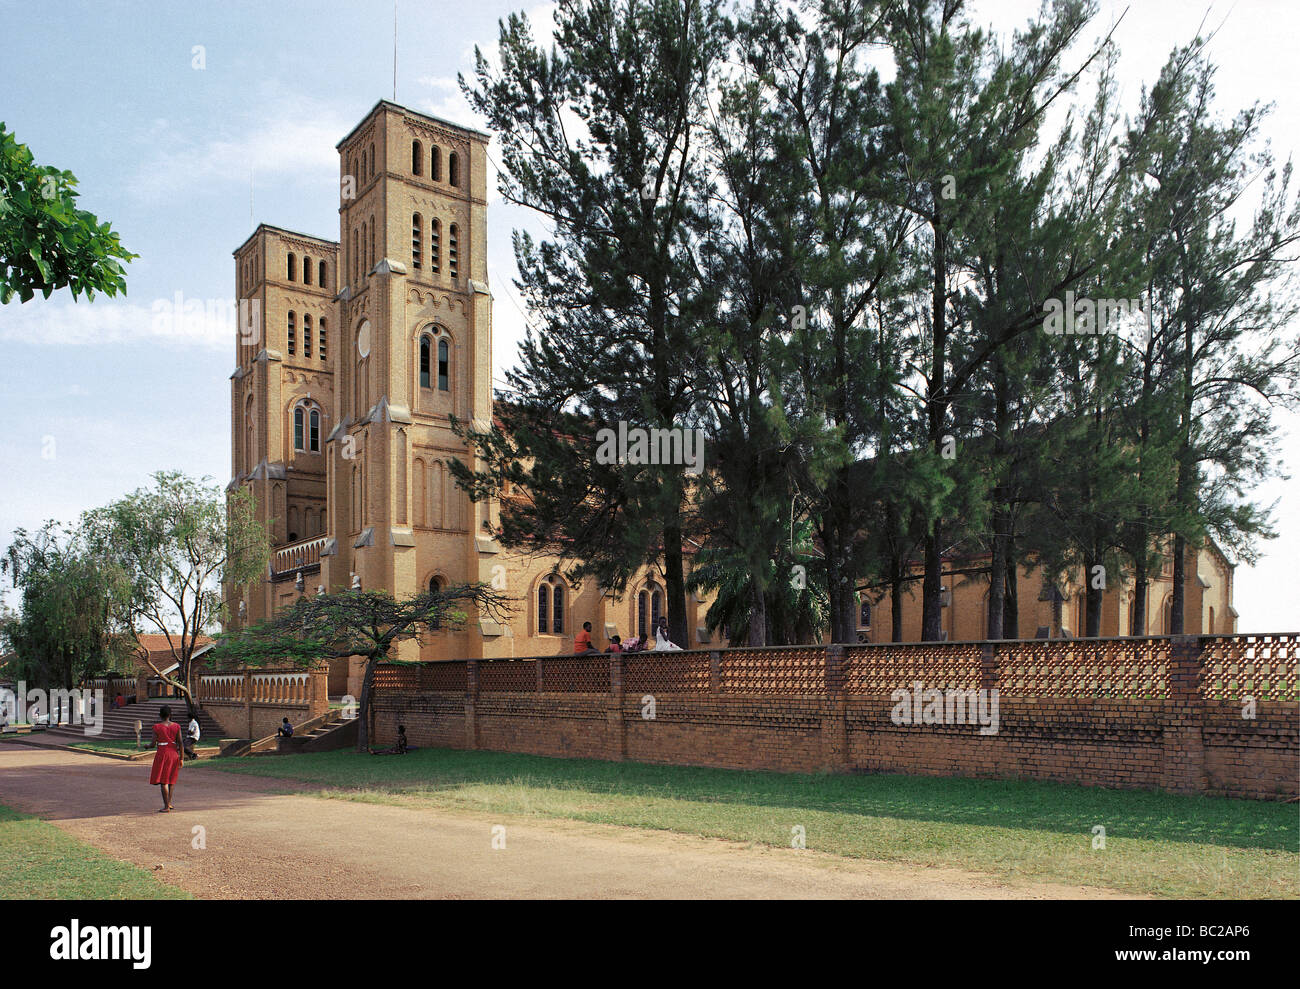 Cathédrale Catholique Romaine Rubaga Kampala Ouganda Afrique de l'Est site religieux bâtiment historique construit de briques de style roman Banque D'Images